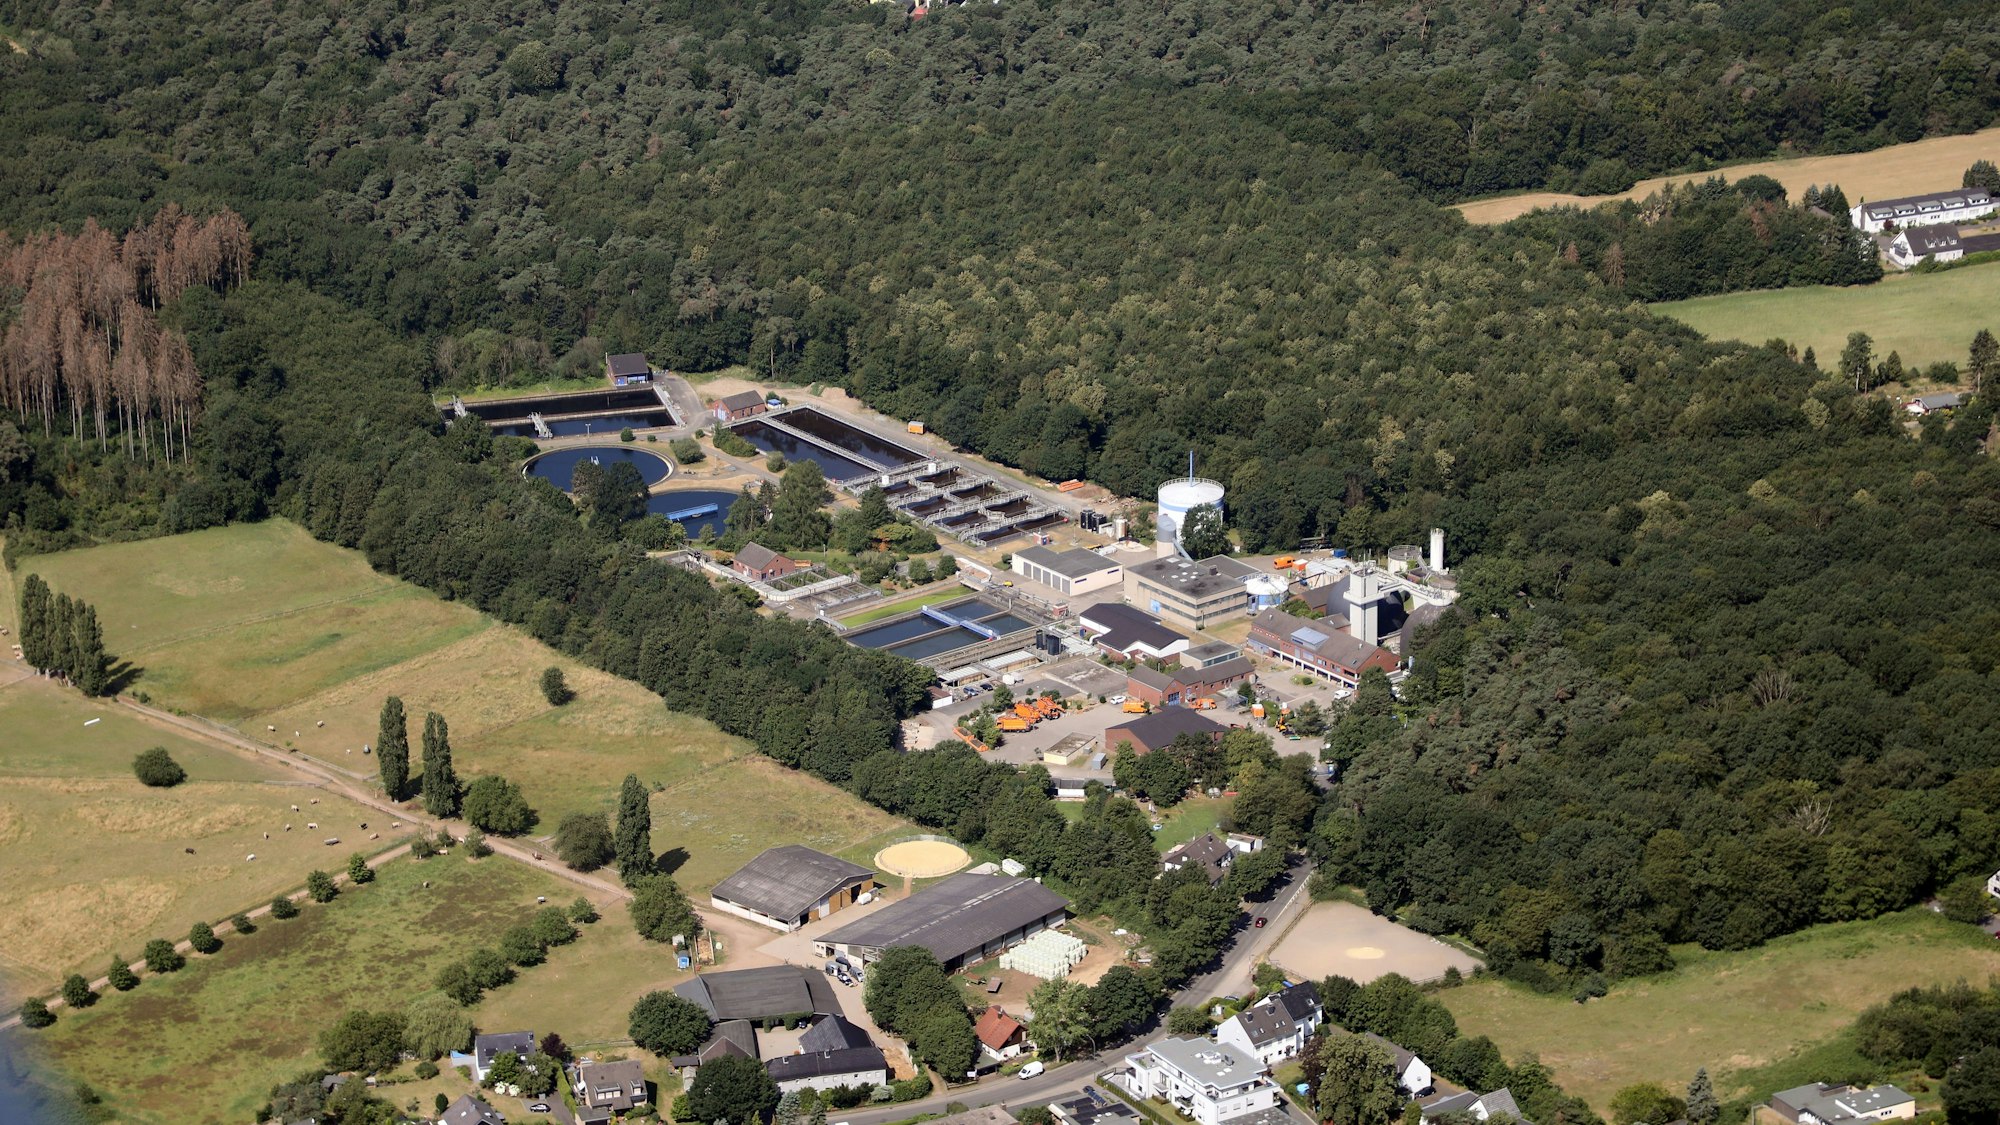 Zentralklärwerk Beningsfeld in Refrath, Luftbild.